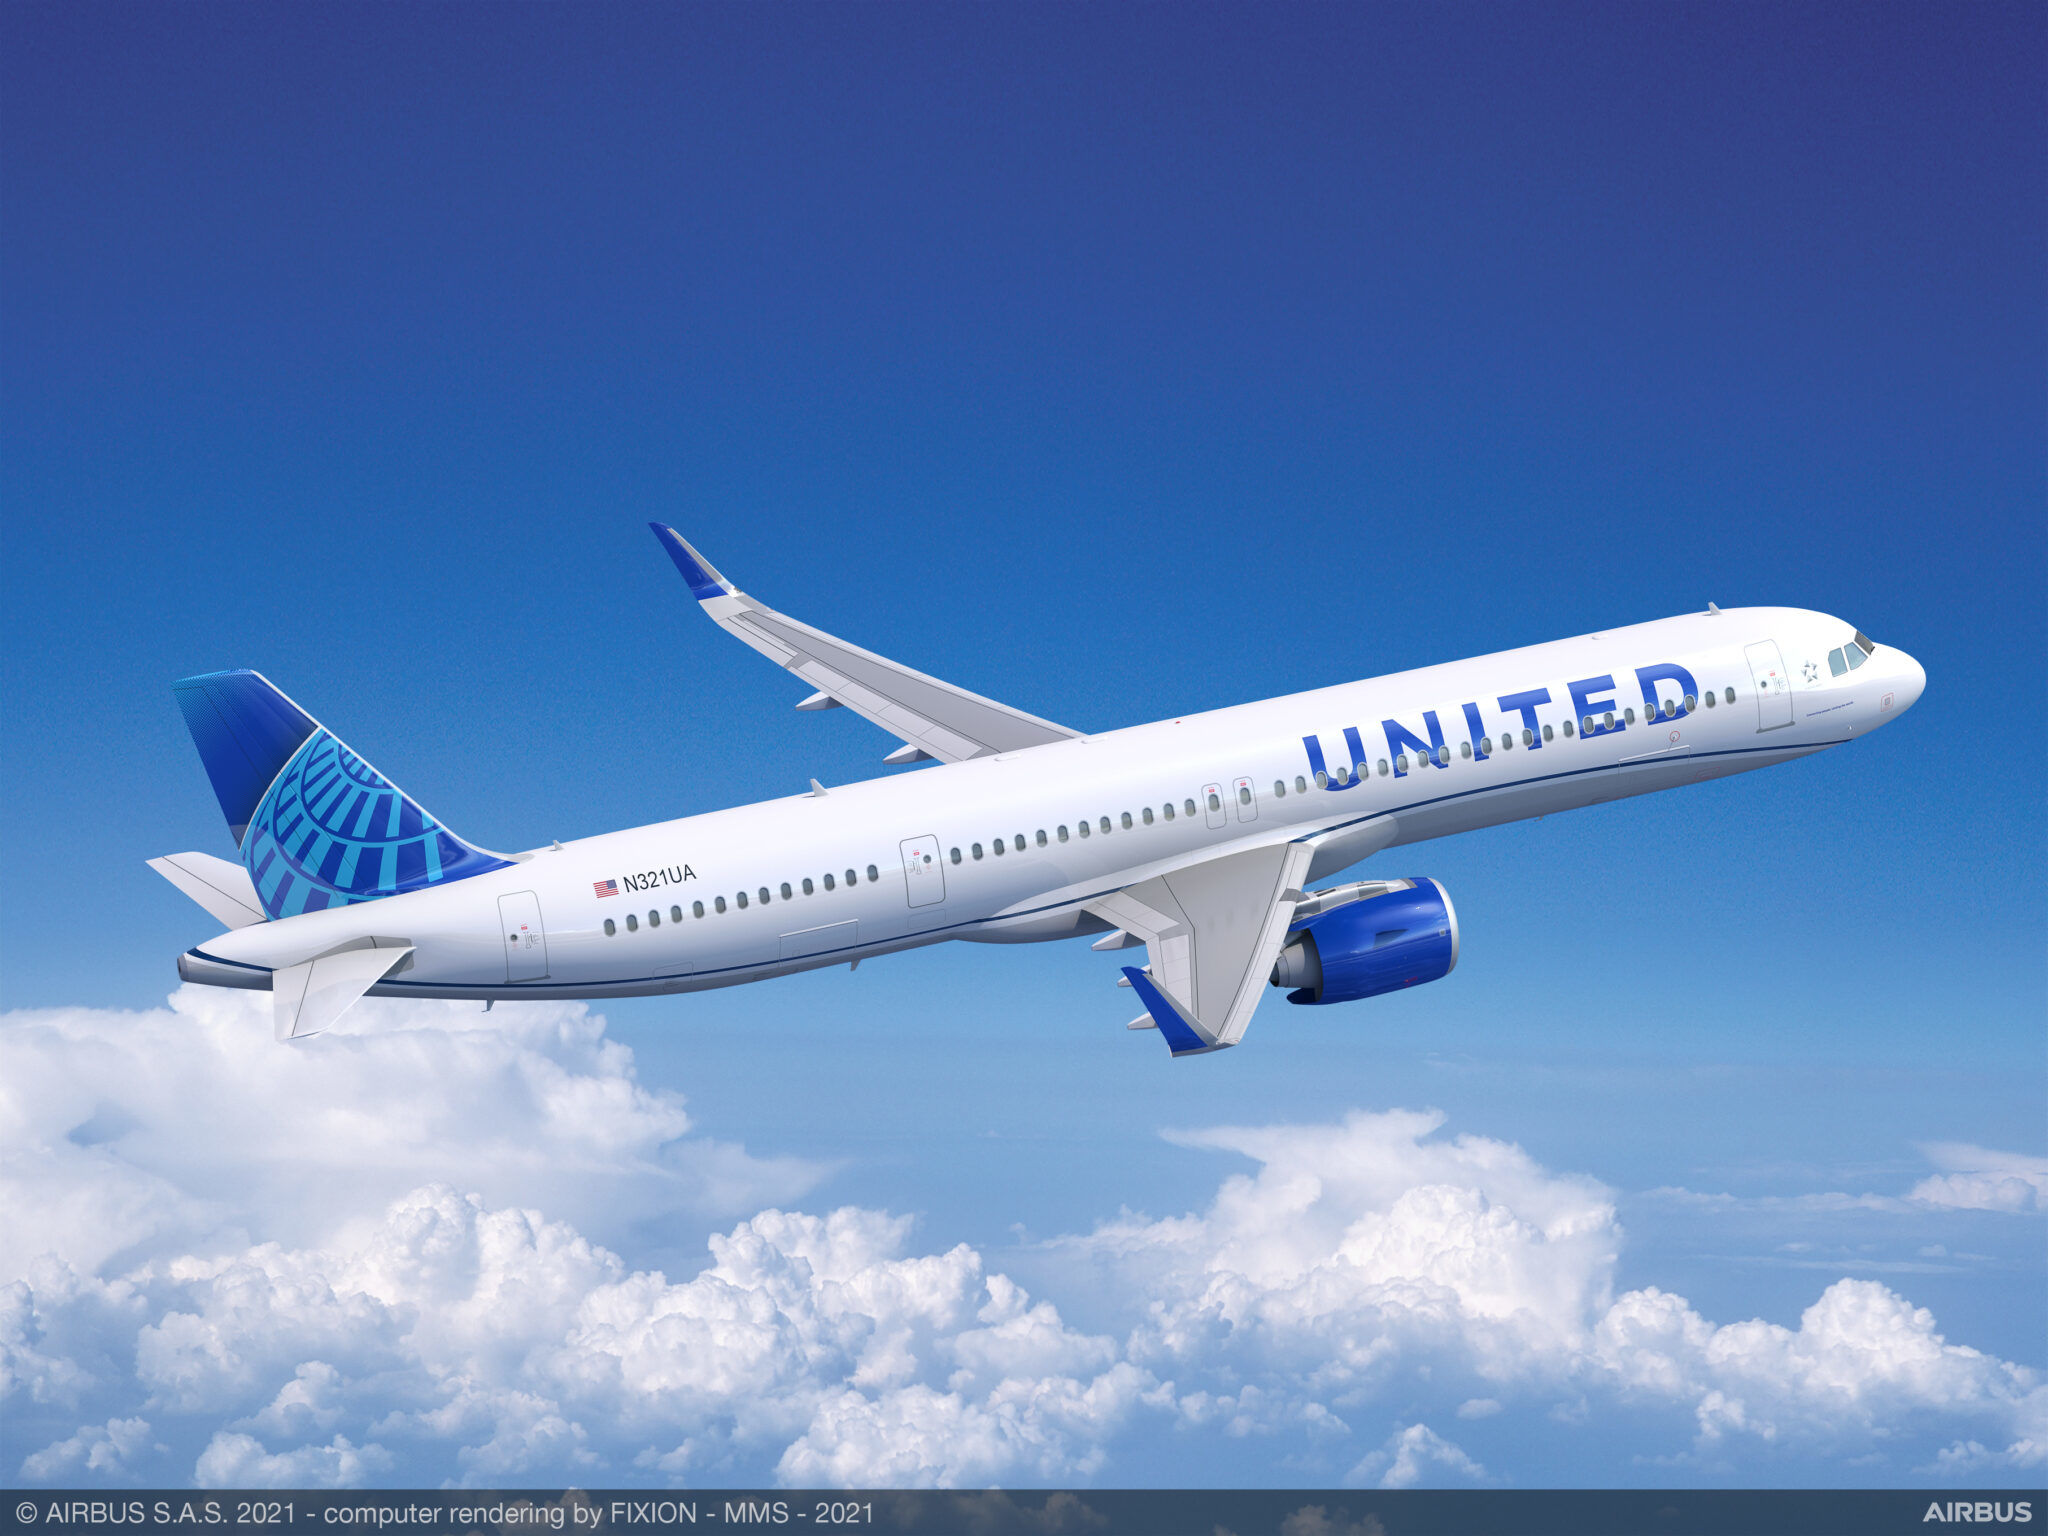 United Airlines podpisuje kontrakt na 35 leasingowanych samolotów Airbus A321neo w miejsce wielokrotnie opóźnionych Boeingów 737 Max 10